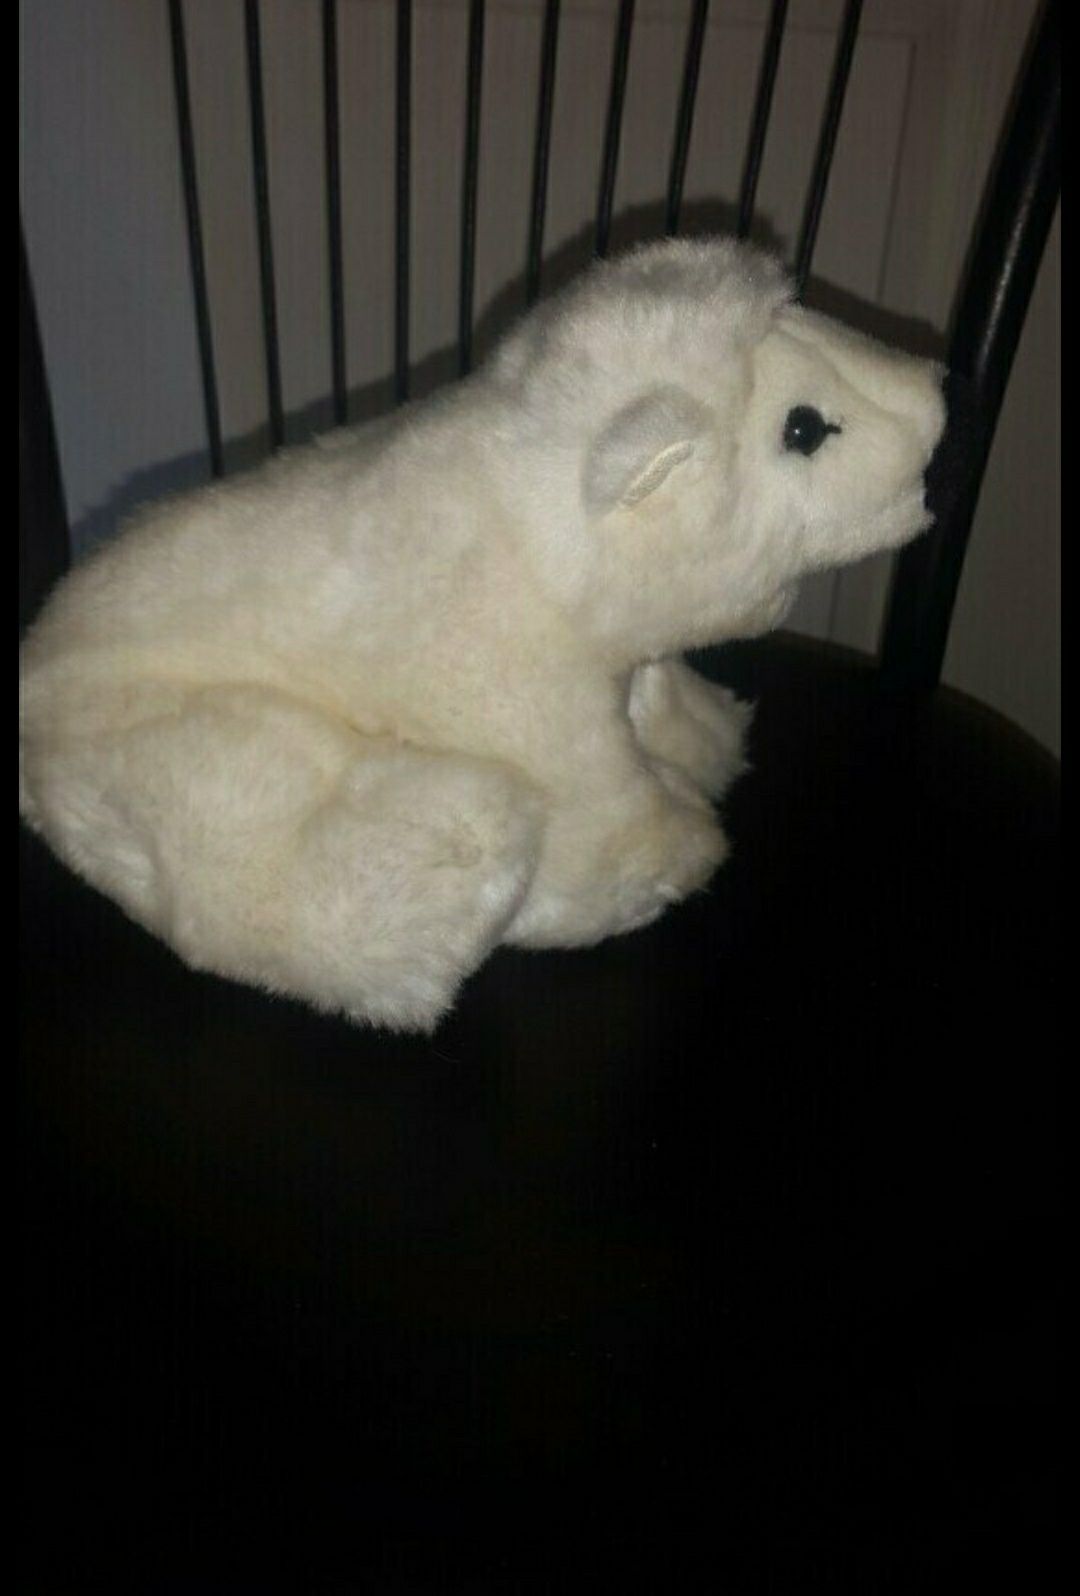 Коллекционный Steiff Knut Белый медведь 113062 20 см